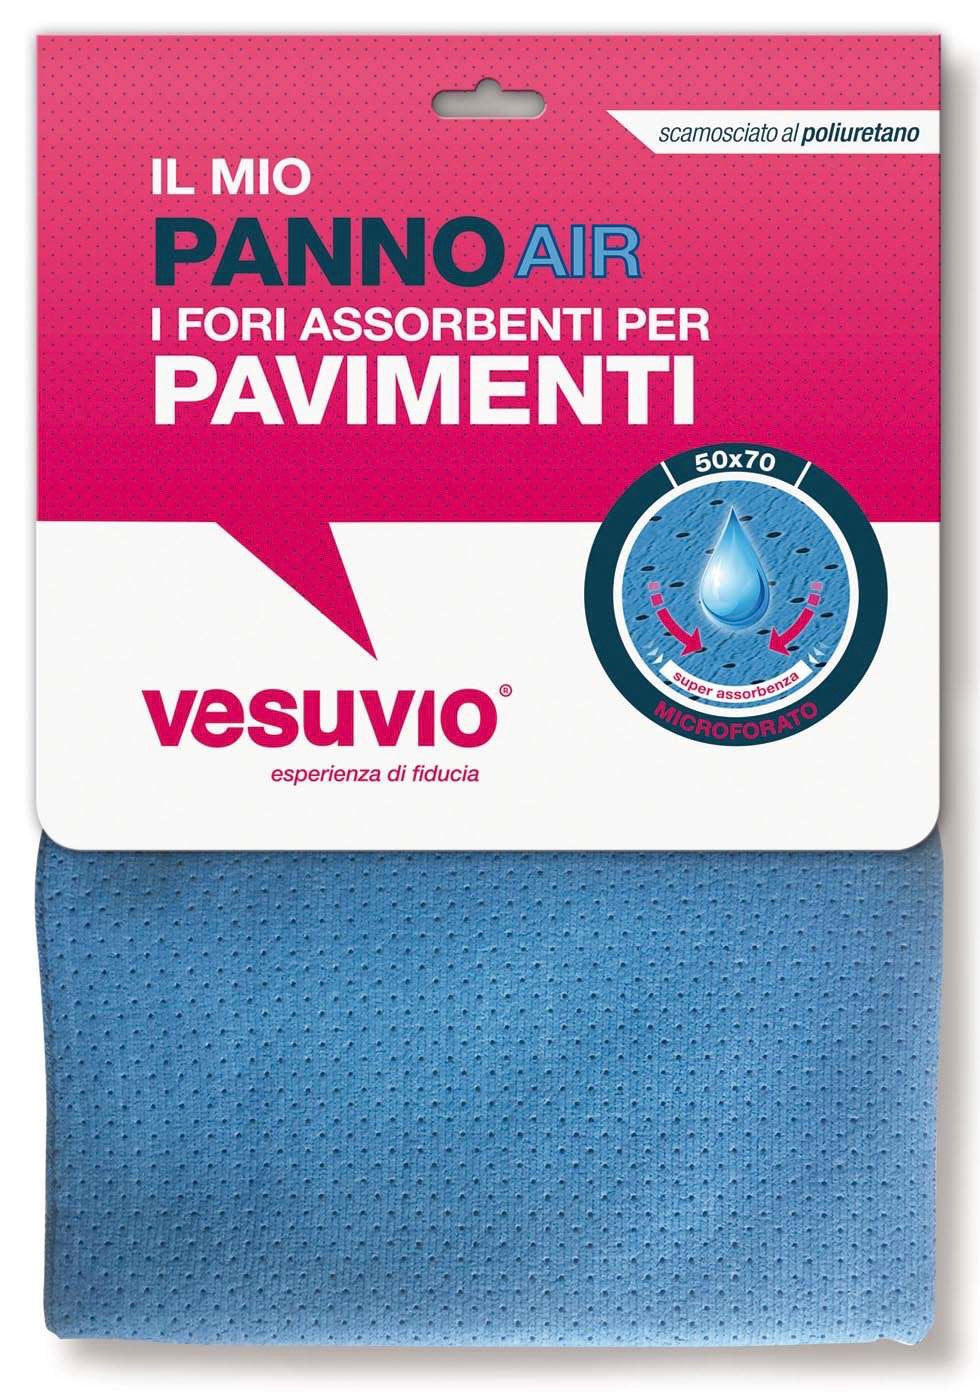 Panno Air Scamosciato Al Poliuretano 50x70 - Vesuvio Shop